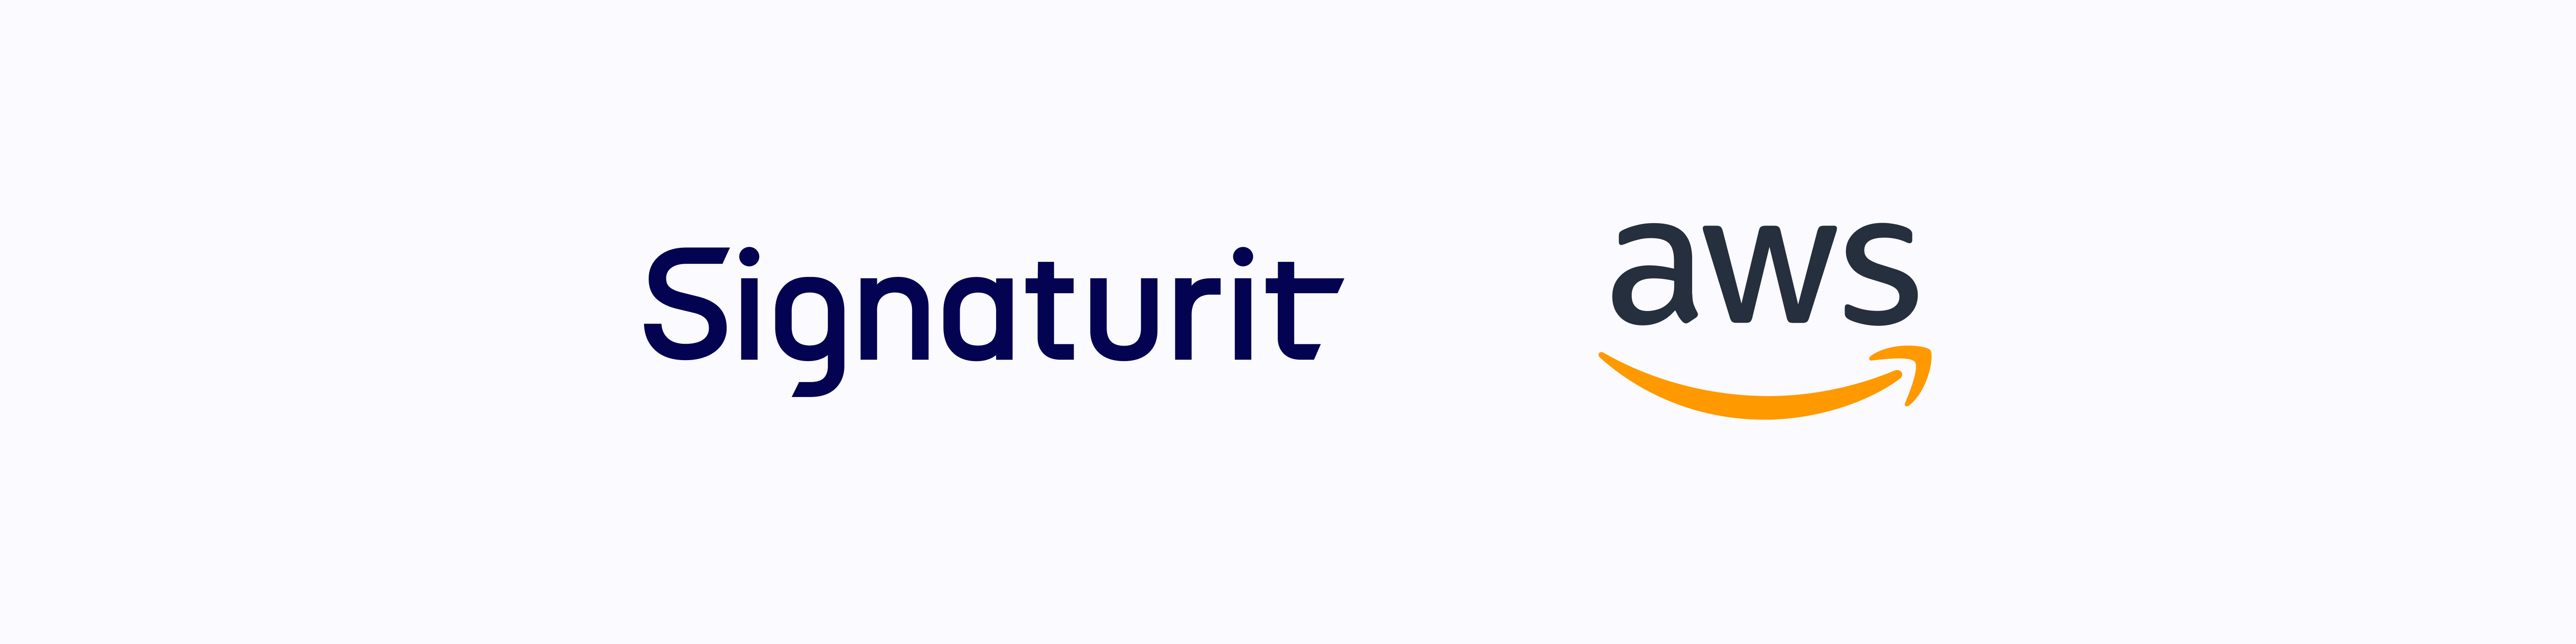 La signature électronique de Signaturit est maintenant disponible sur Amazon Web Services Marketplace (AWS)